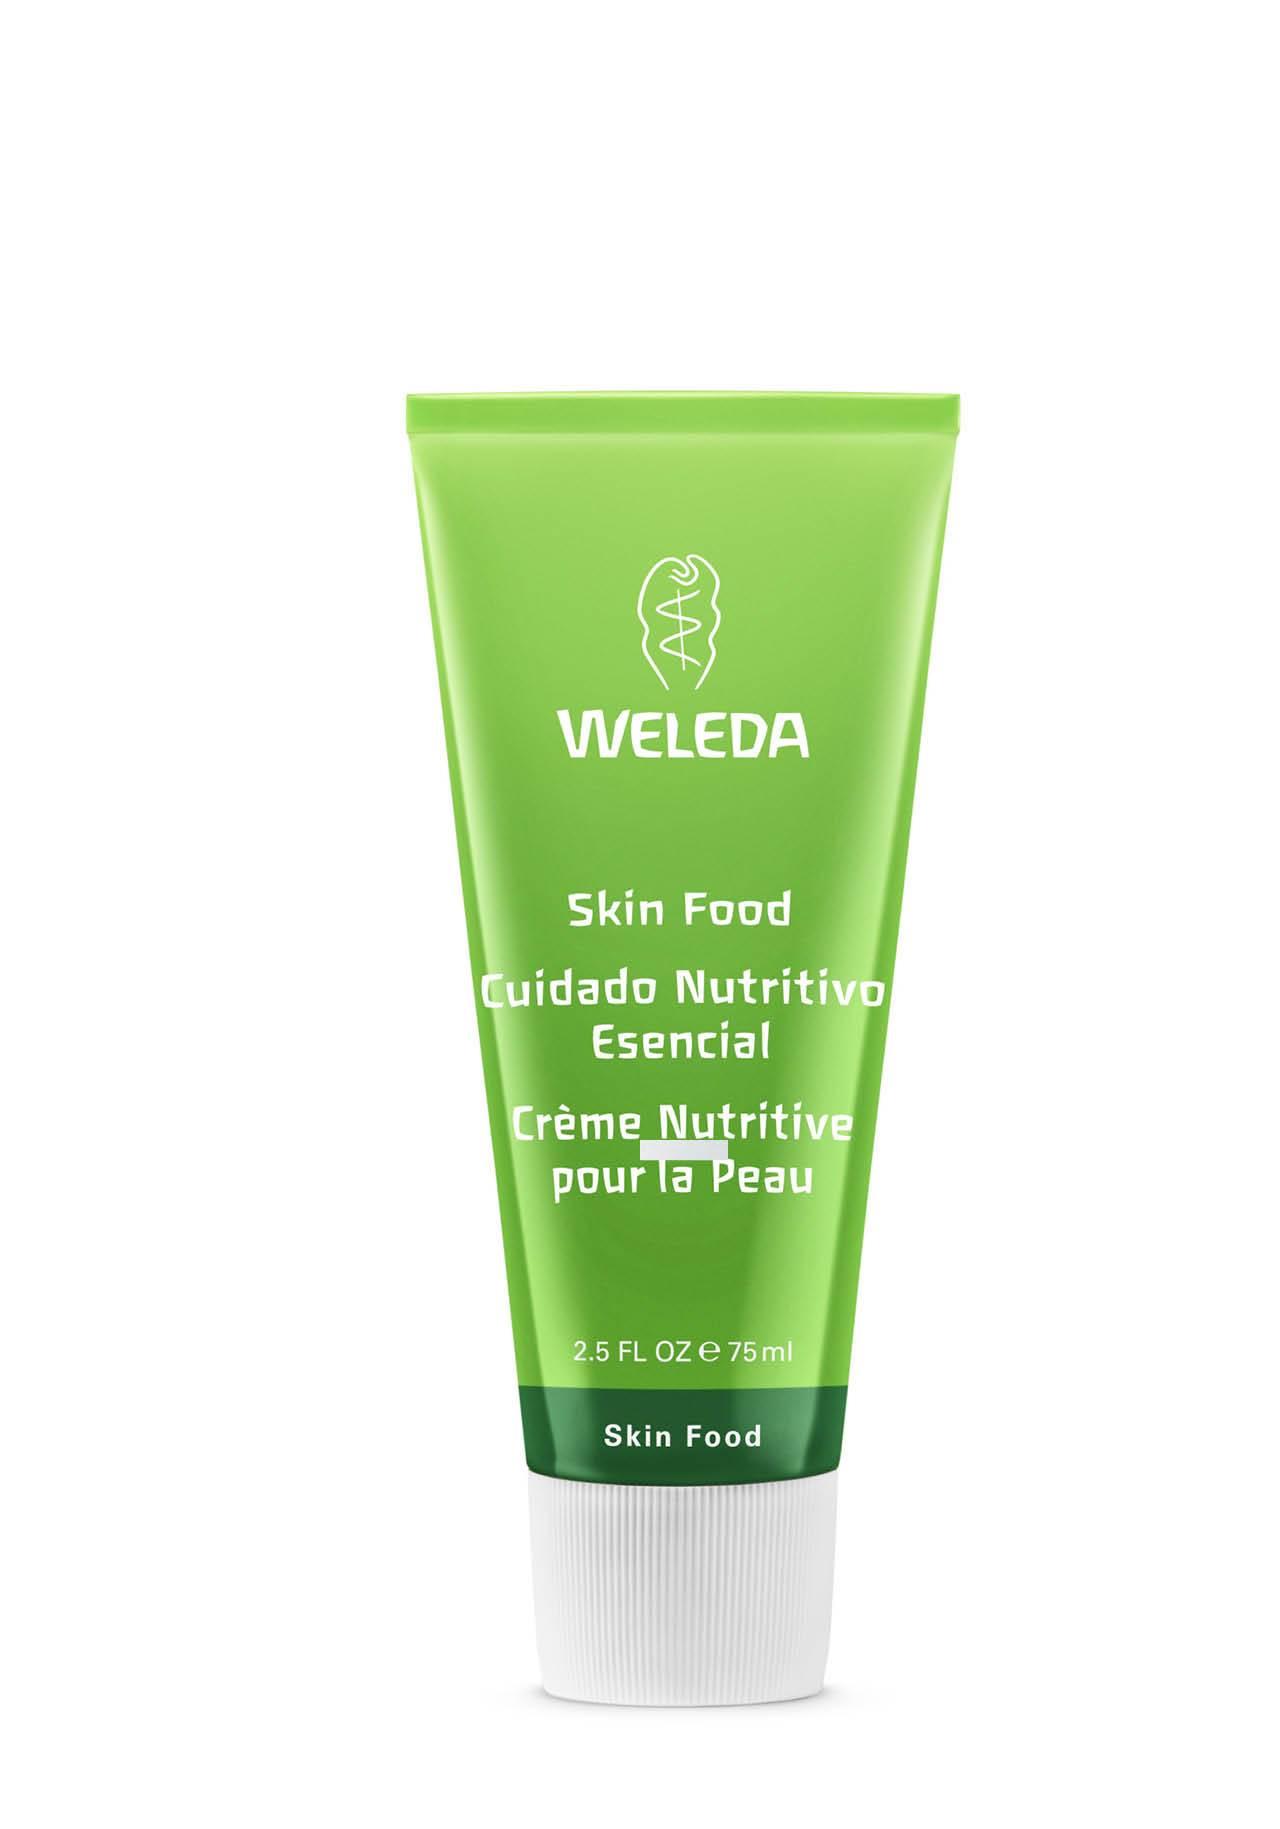 Cosmética multifunción menos de 20€ Crema Nutritiva Skin Food de Weleda